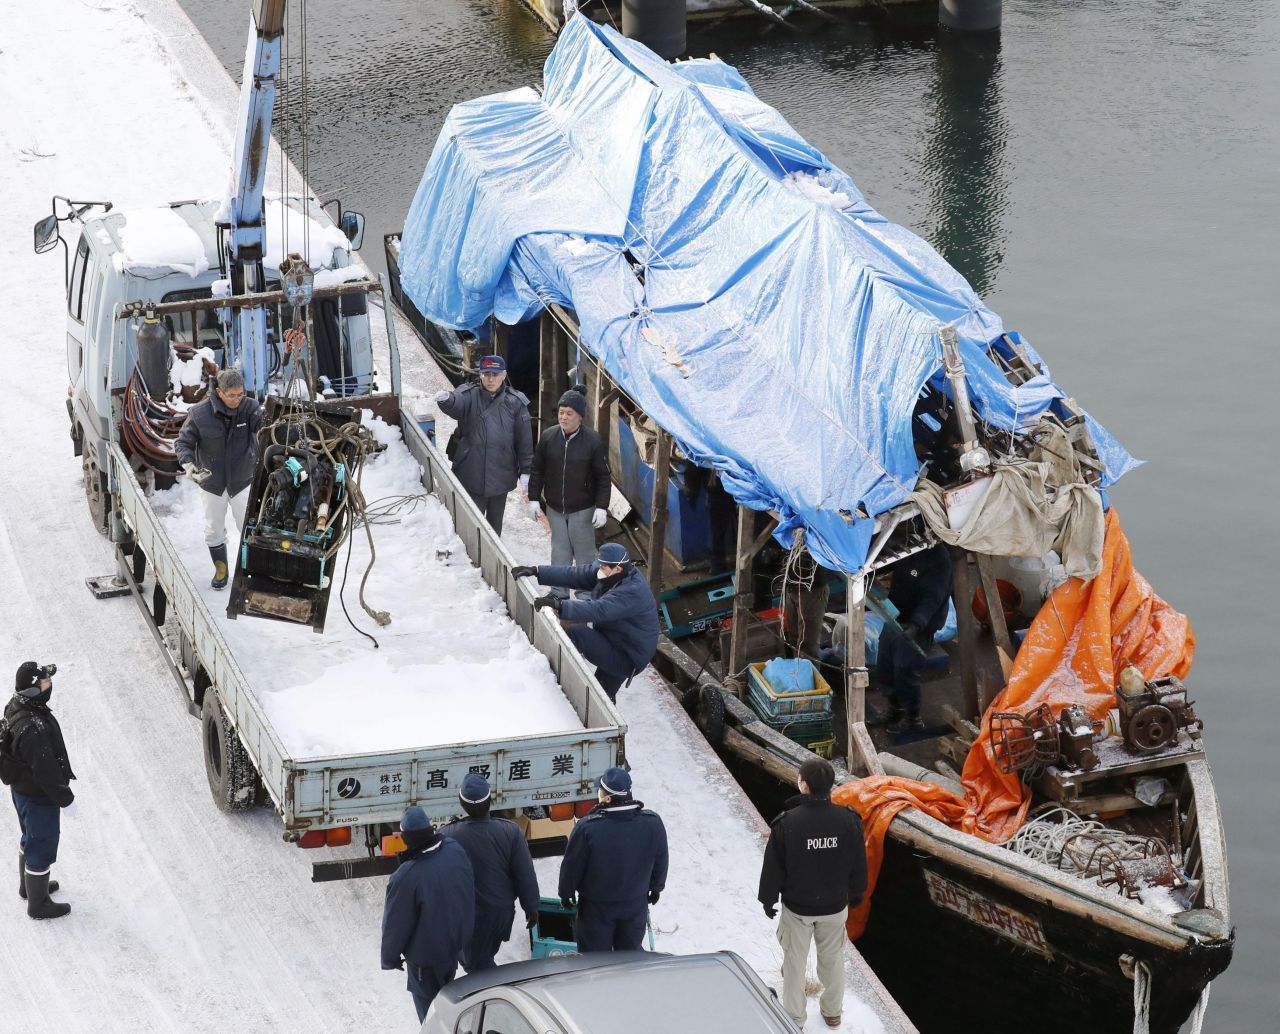 An Japans Küste wurden in den vergangenen Jahren zahlreiche mutmaßliche aus Nordkorea stammende Geisterschiffe angeschwemmt. Laut der Tageszeitung "Yomiuri Shimbun" seien 2019 mindestens 156 Schiffe nach Japan getrieben. Auf manchen Schiffen fand man auch Leichen.